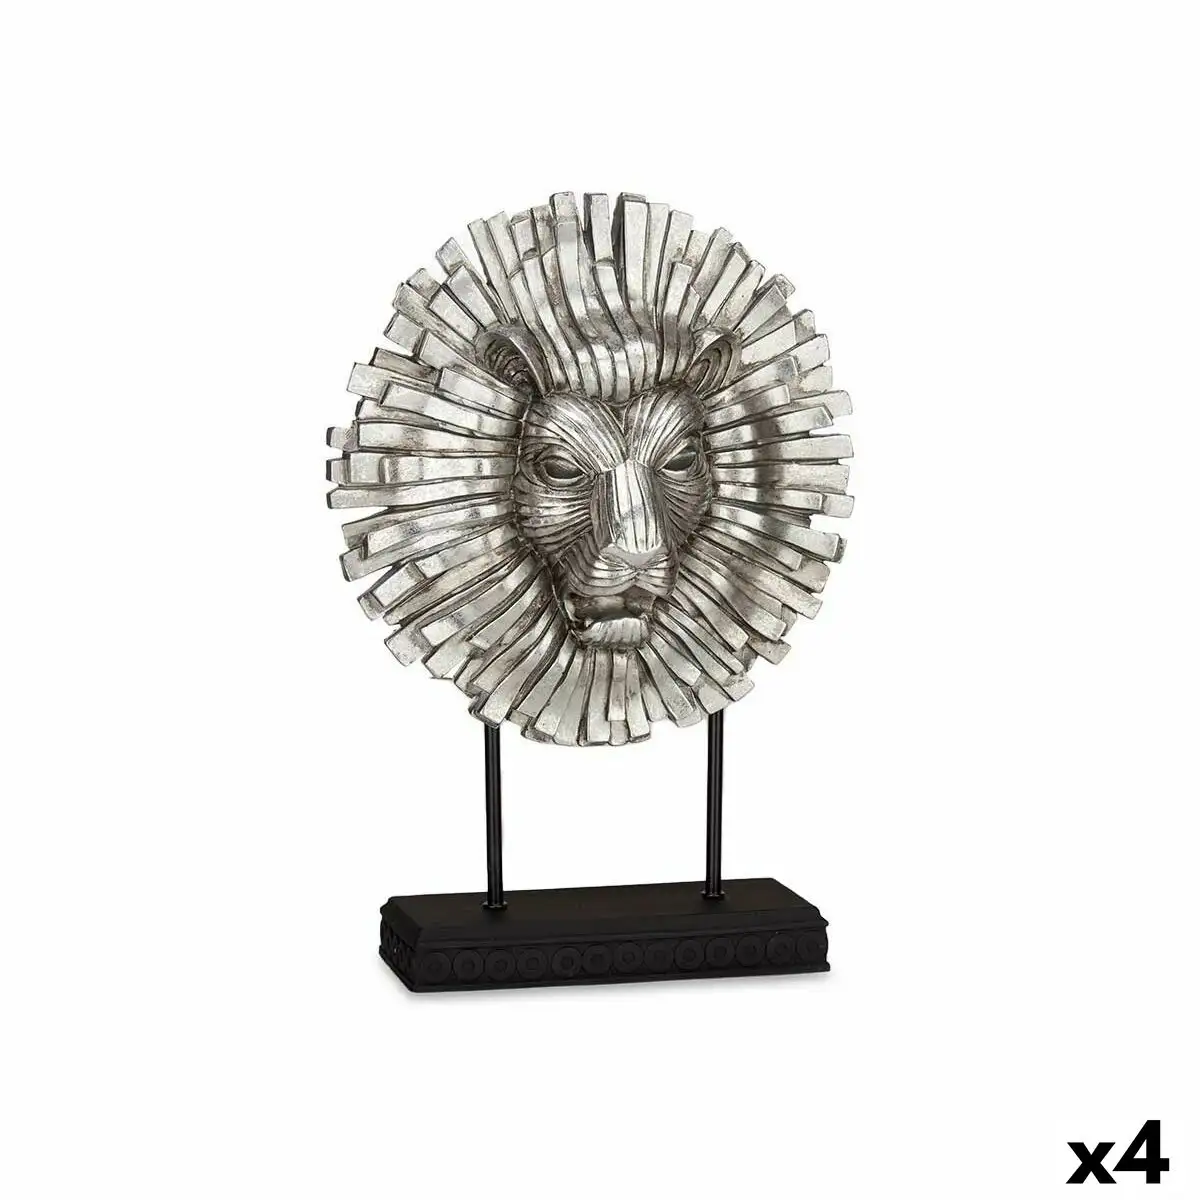 Figurine decorative lion argente 28 x 38 5 x 11 5 cm 4 unites _9913. DIAYTAR SENEGAL - L'Art de Choisir, l'Art de Vivre. Explorez notre univers de produits soigneusement sélectionnés pour vous offrir une expérience shopping riche et gratifiante.